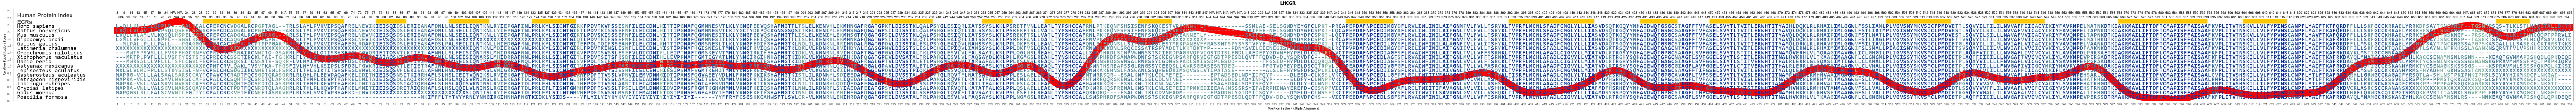 Lhcgr Gene Genecards Lshr Protein Lshr Antibody